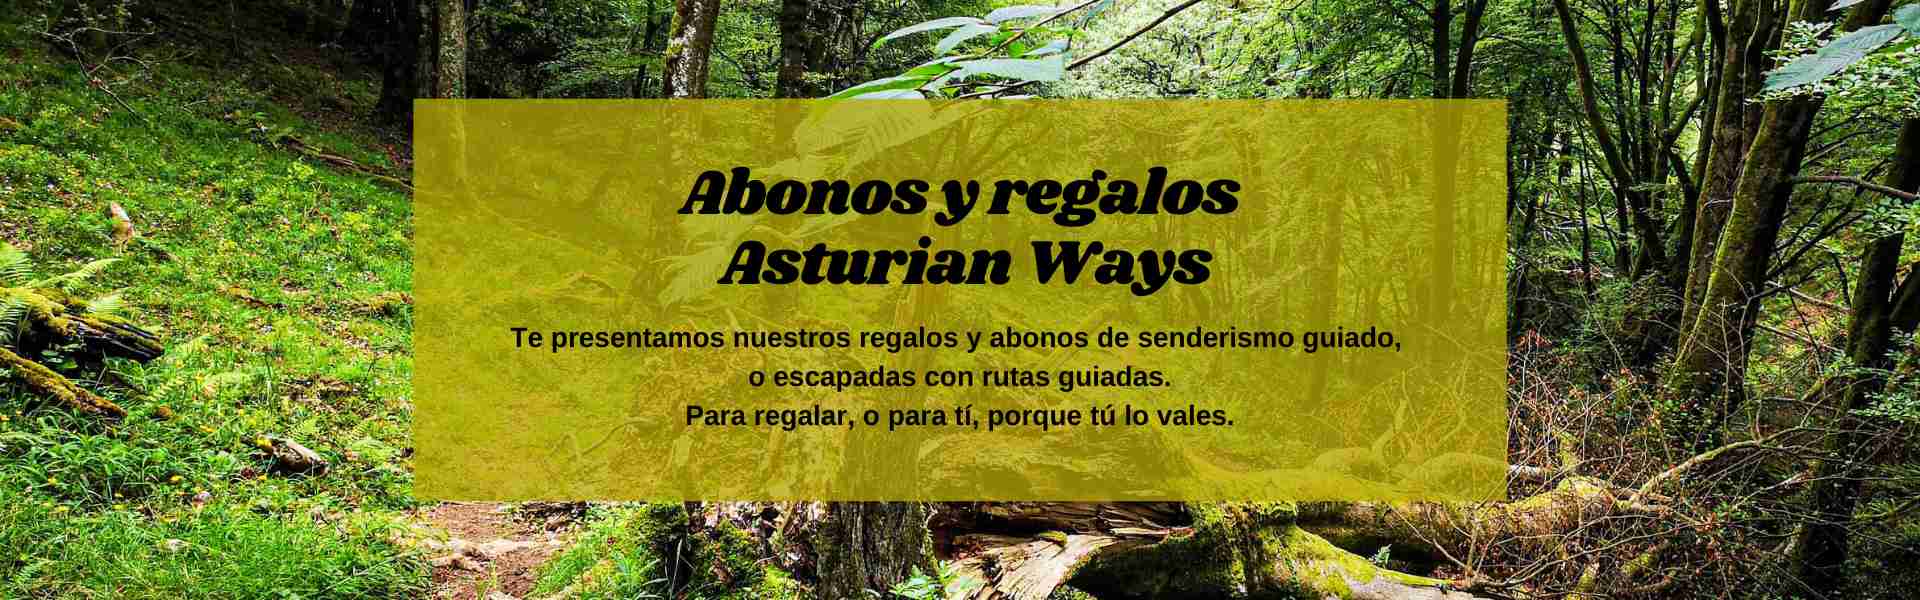 Abonos y regalos Asturian Ways